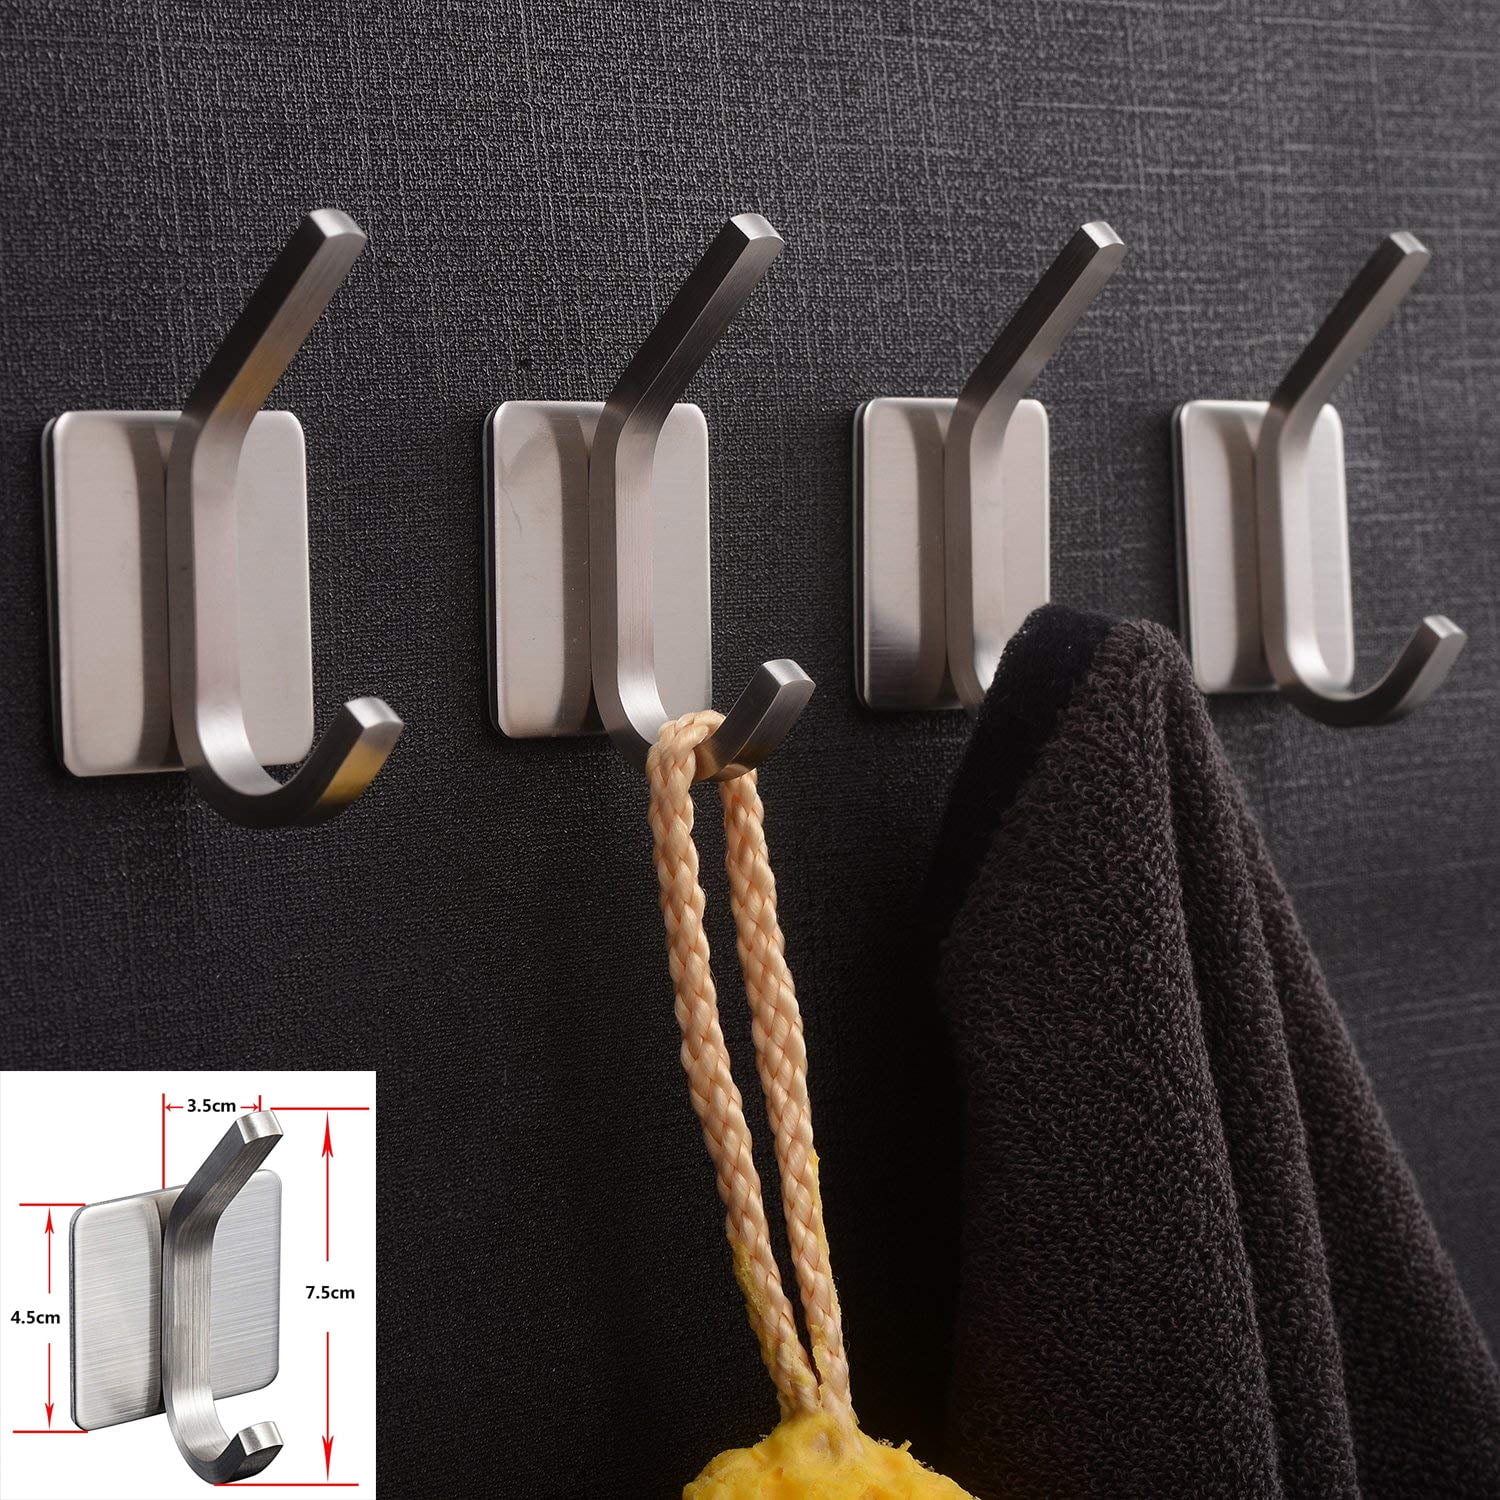 Innoam Robe Towel Hooks Waterproof 3M Self Adhesive Brushed Stainless Steel Wall Durable Hook for Bathroom Kitchen 4-Pack 